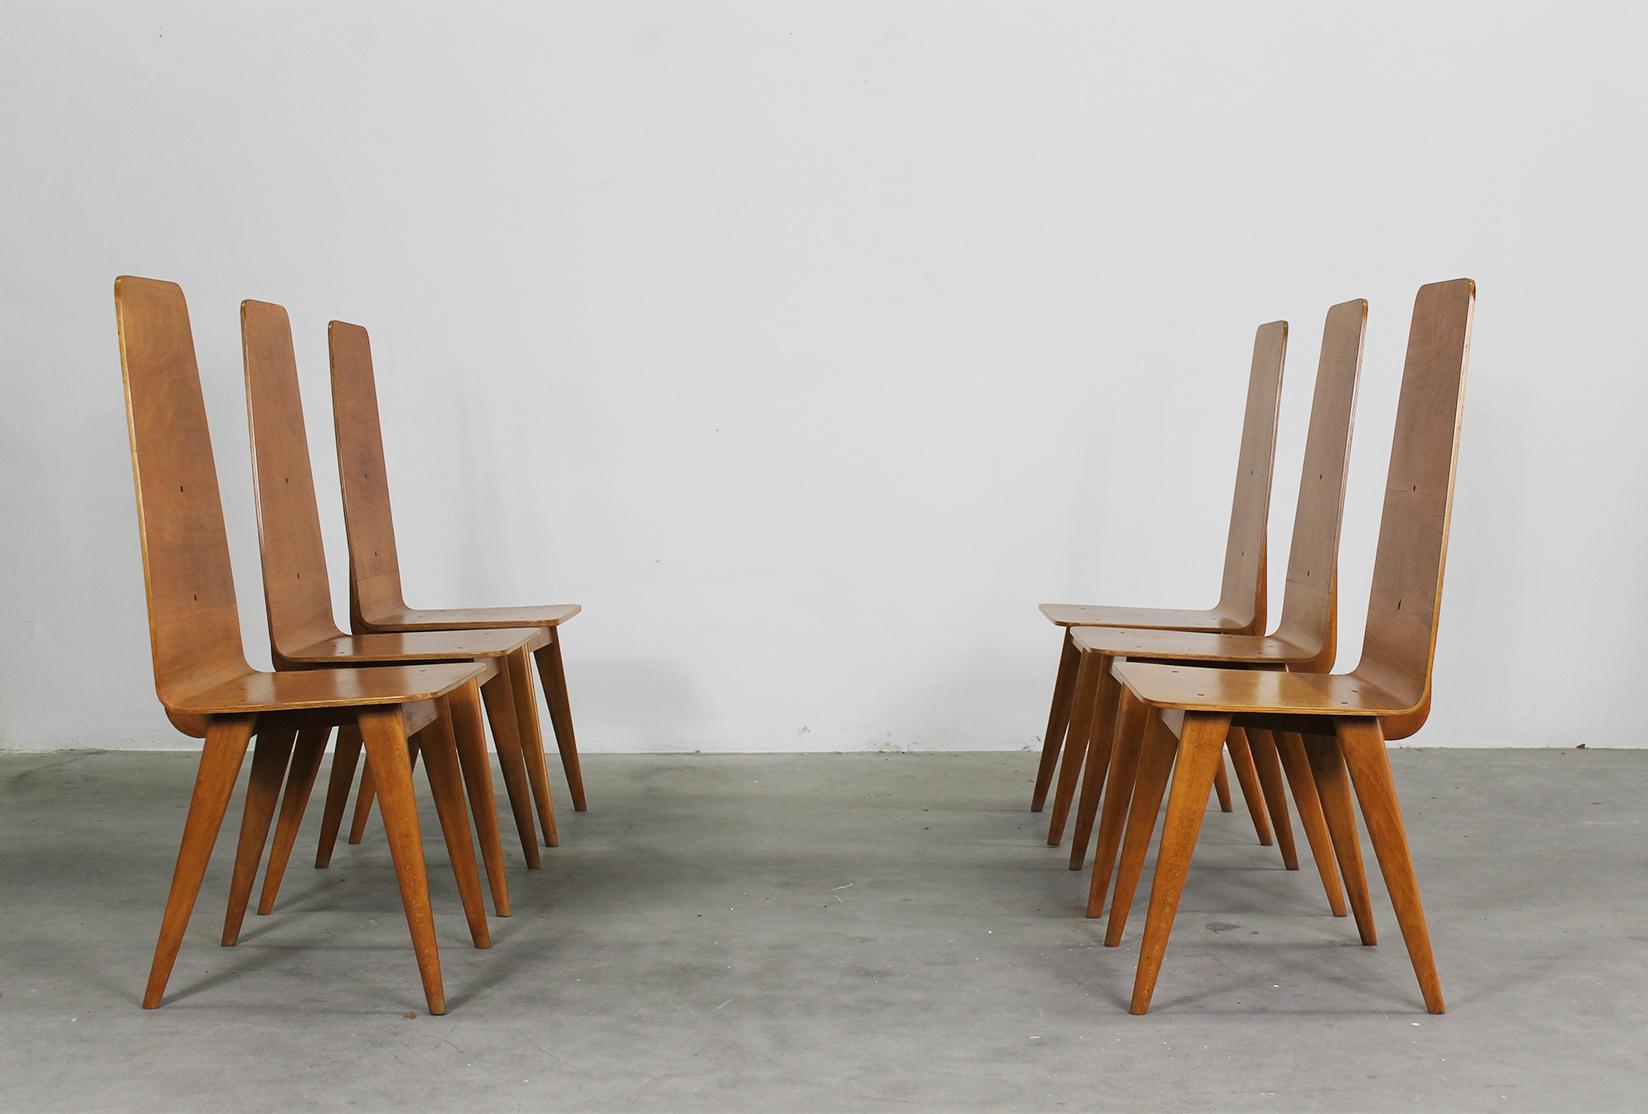 Ensemble de six chaises de salle à manger en bois courbé, conçu par Sineo Gemignani, fabrication italienne, années 1940.
Dimensions : 44 x 46 x 104 cm (chacun).